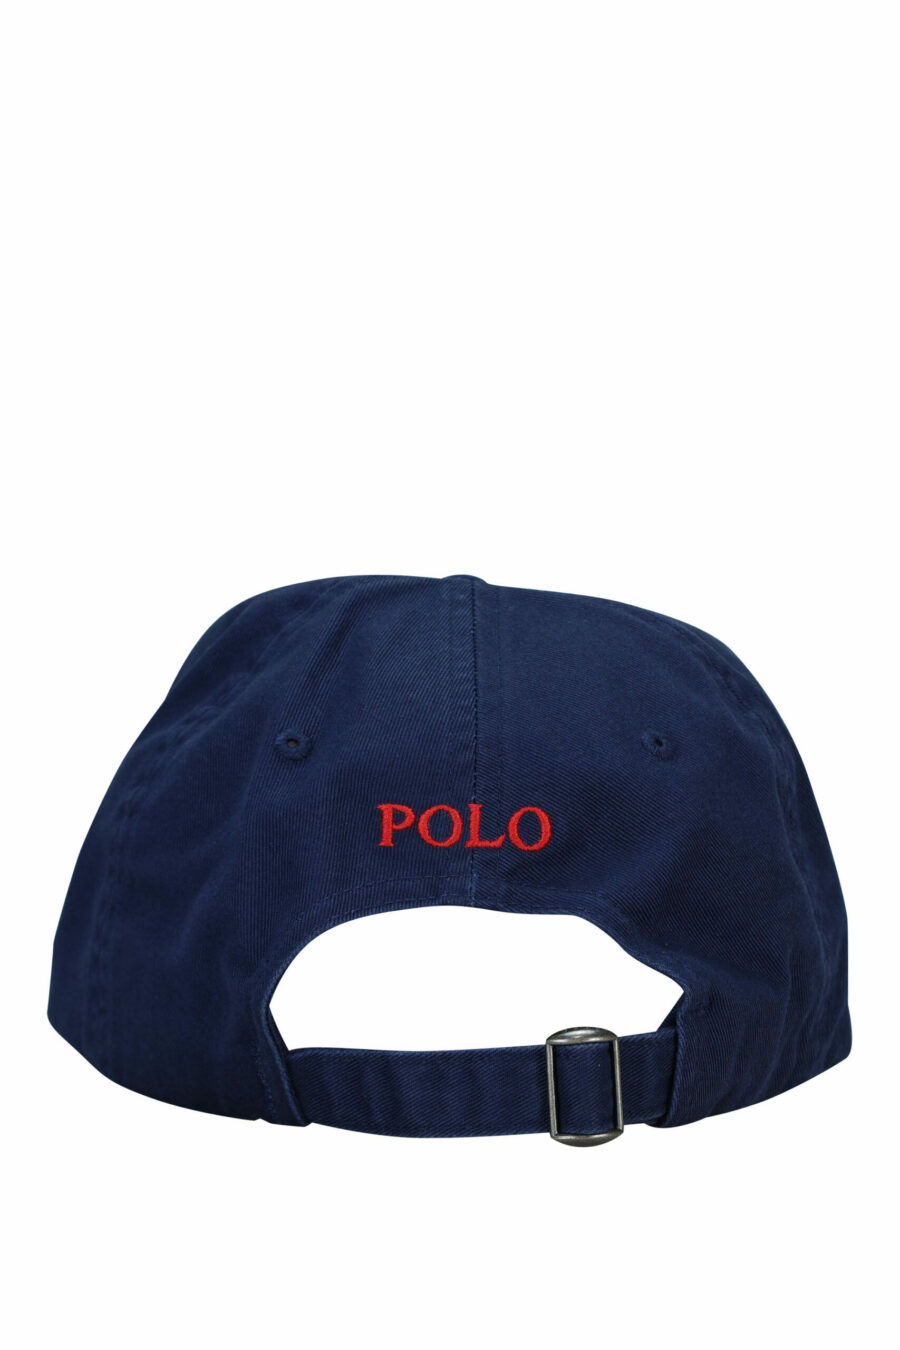 Dunkelblaue Mütze mit Mini-Logo "Polo" - 3616531139422 1 skaliert